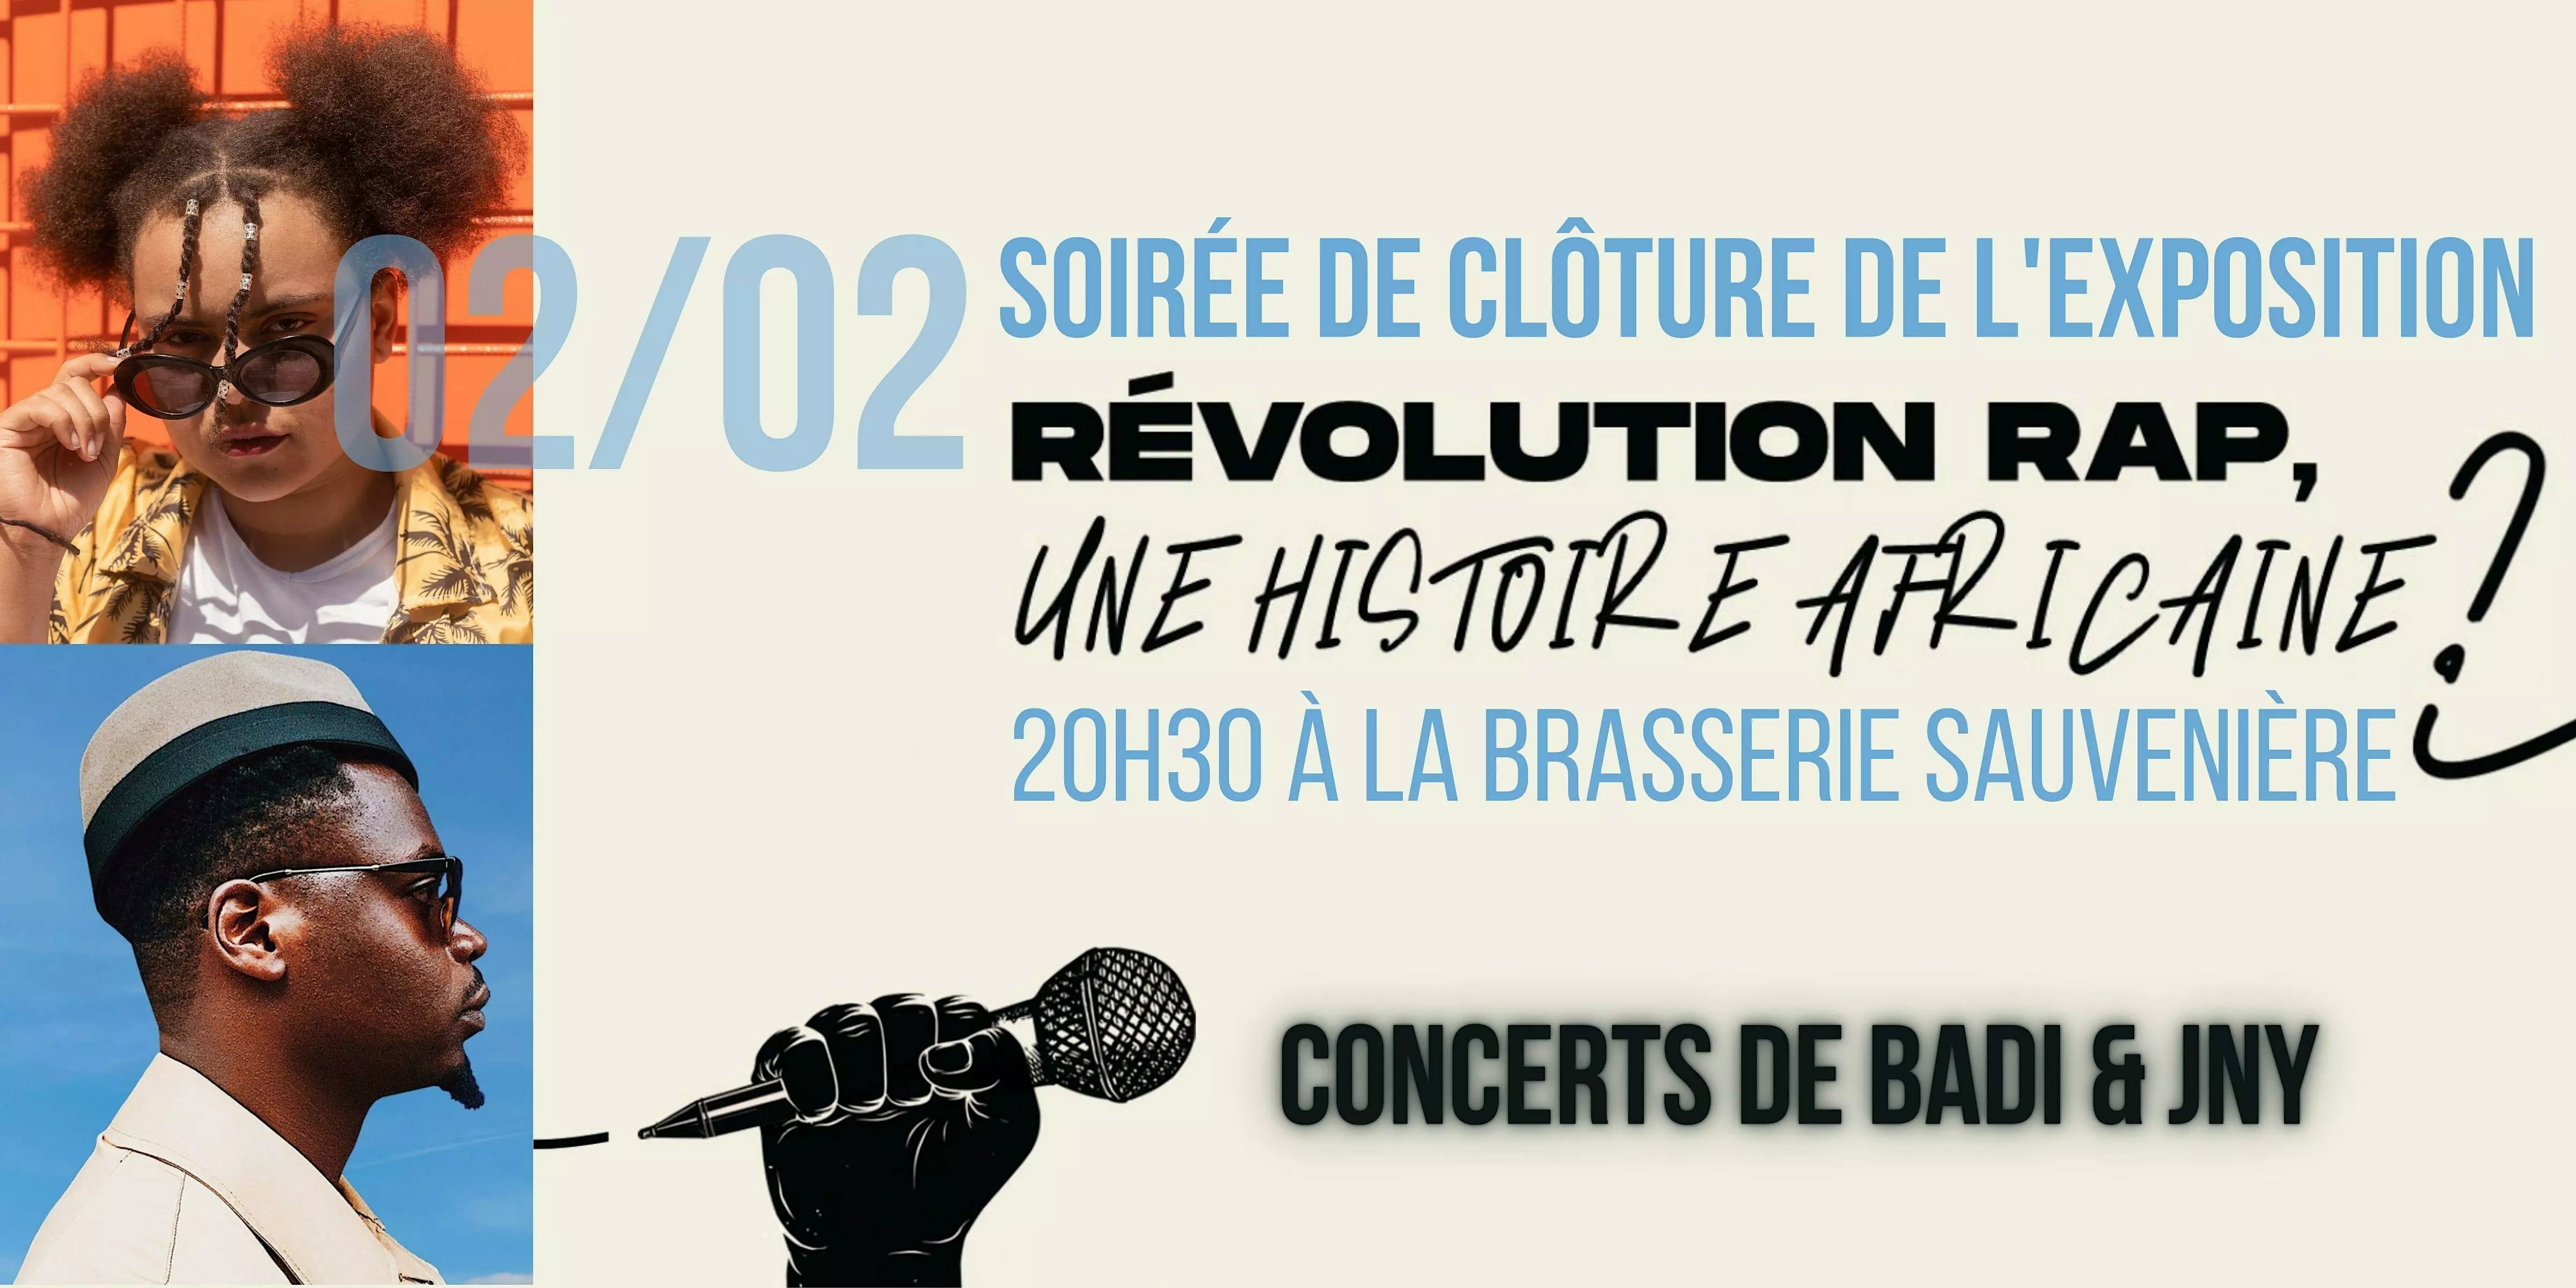 Soirées-Expo "Révolution Rap" - Soirée de clôture